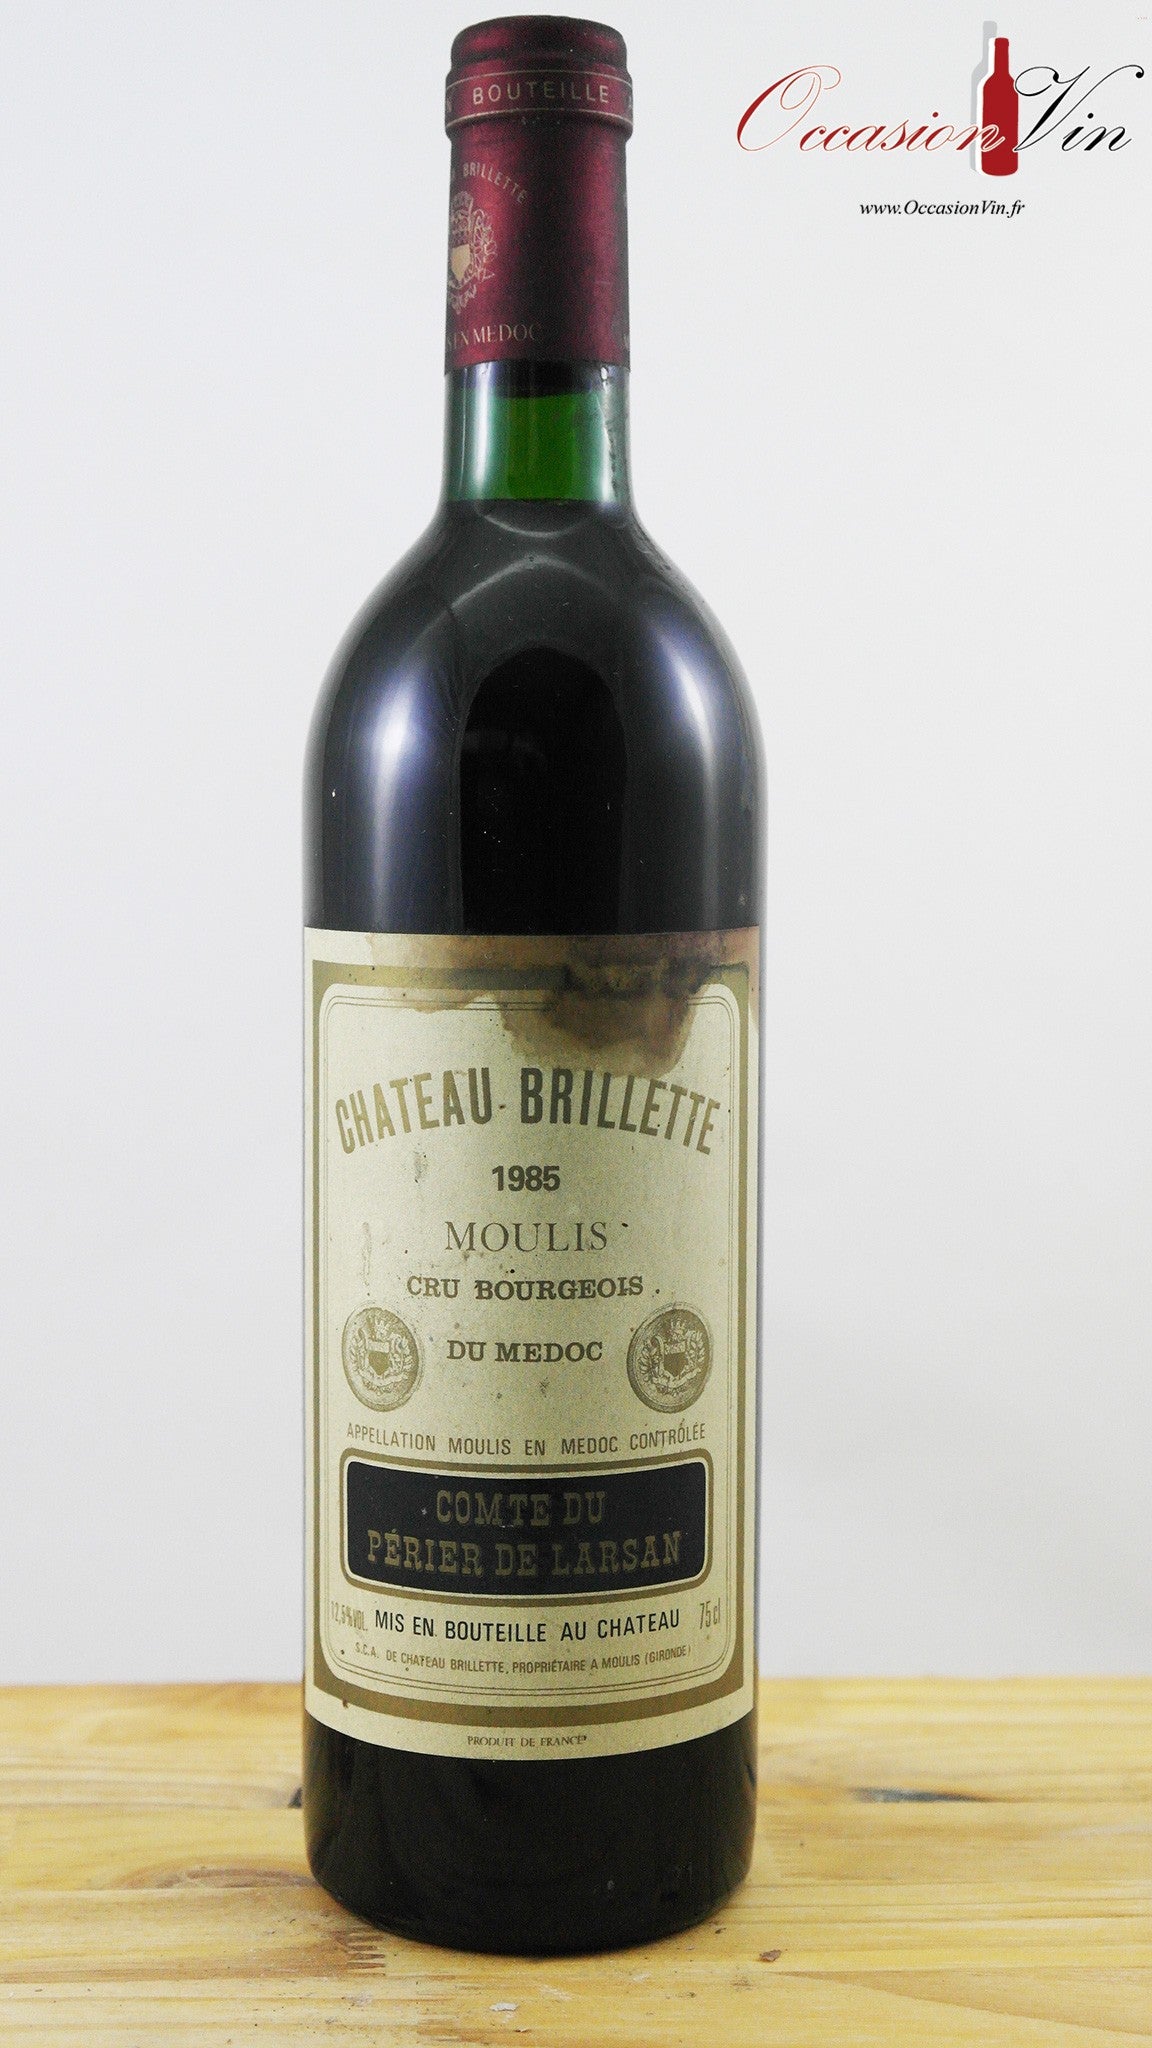 Château Brilette Vin 1985